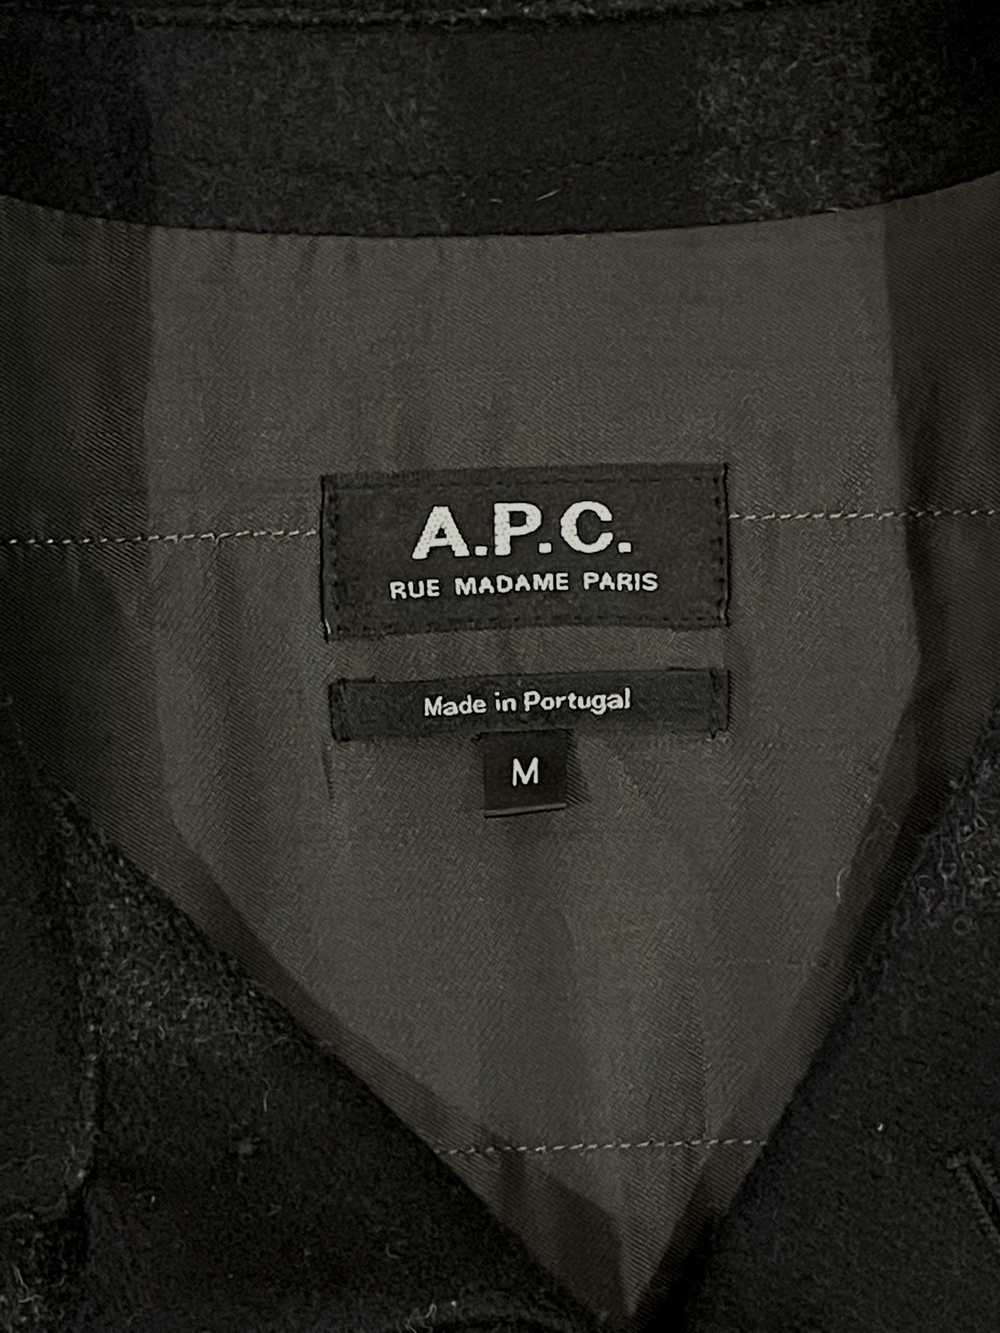 A.P.C. A.P.C Rue Madame Paris Black/Navy Wool Jac… - image 7